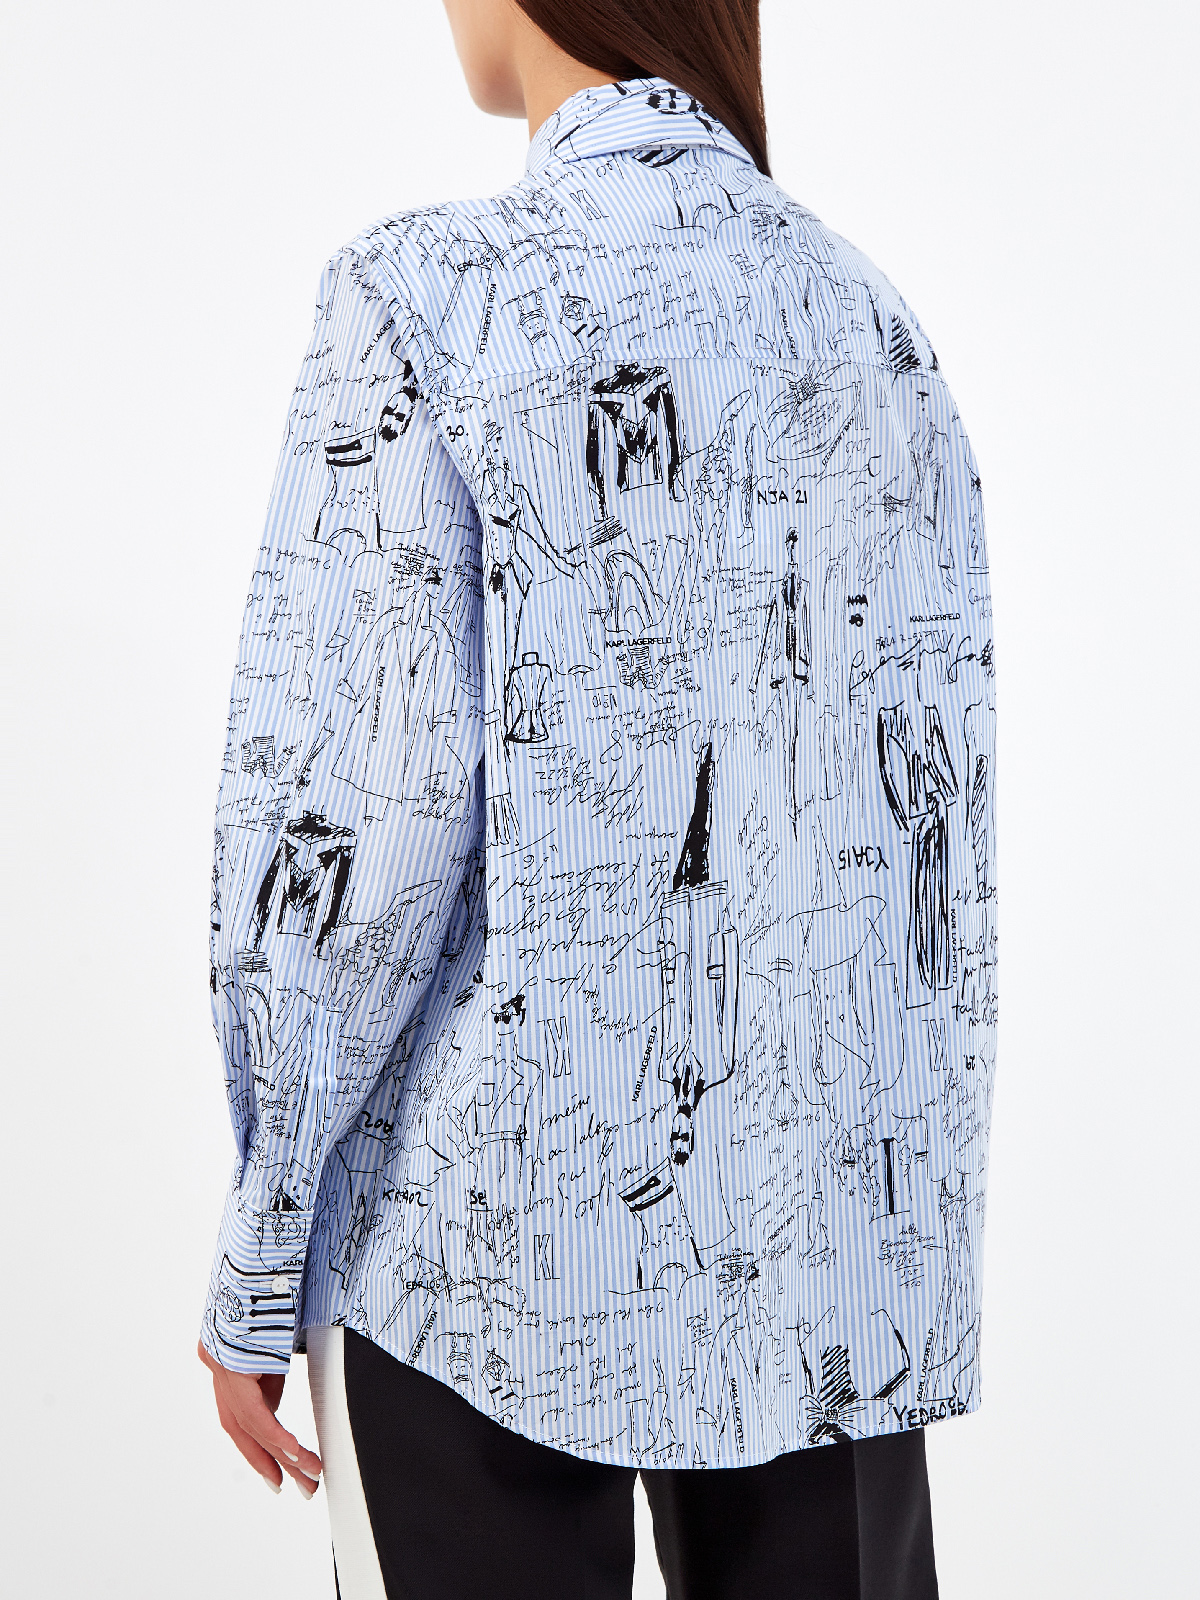 Рубашка с принтованными эскизами из коллекции Ultimate Icon KARL LAGERFELD, цвет голубой, размер S;M;L - фото 4